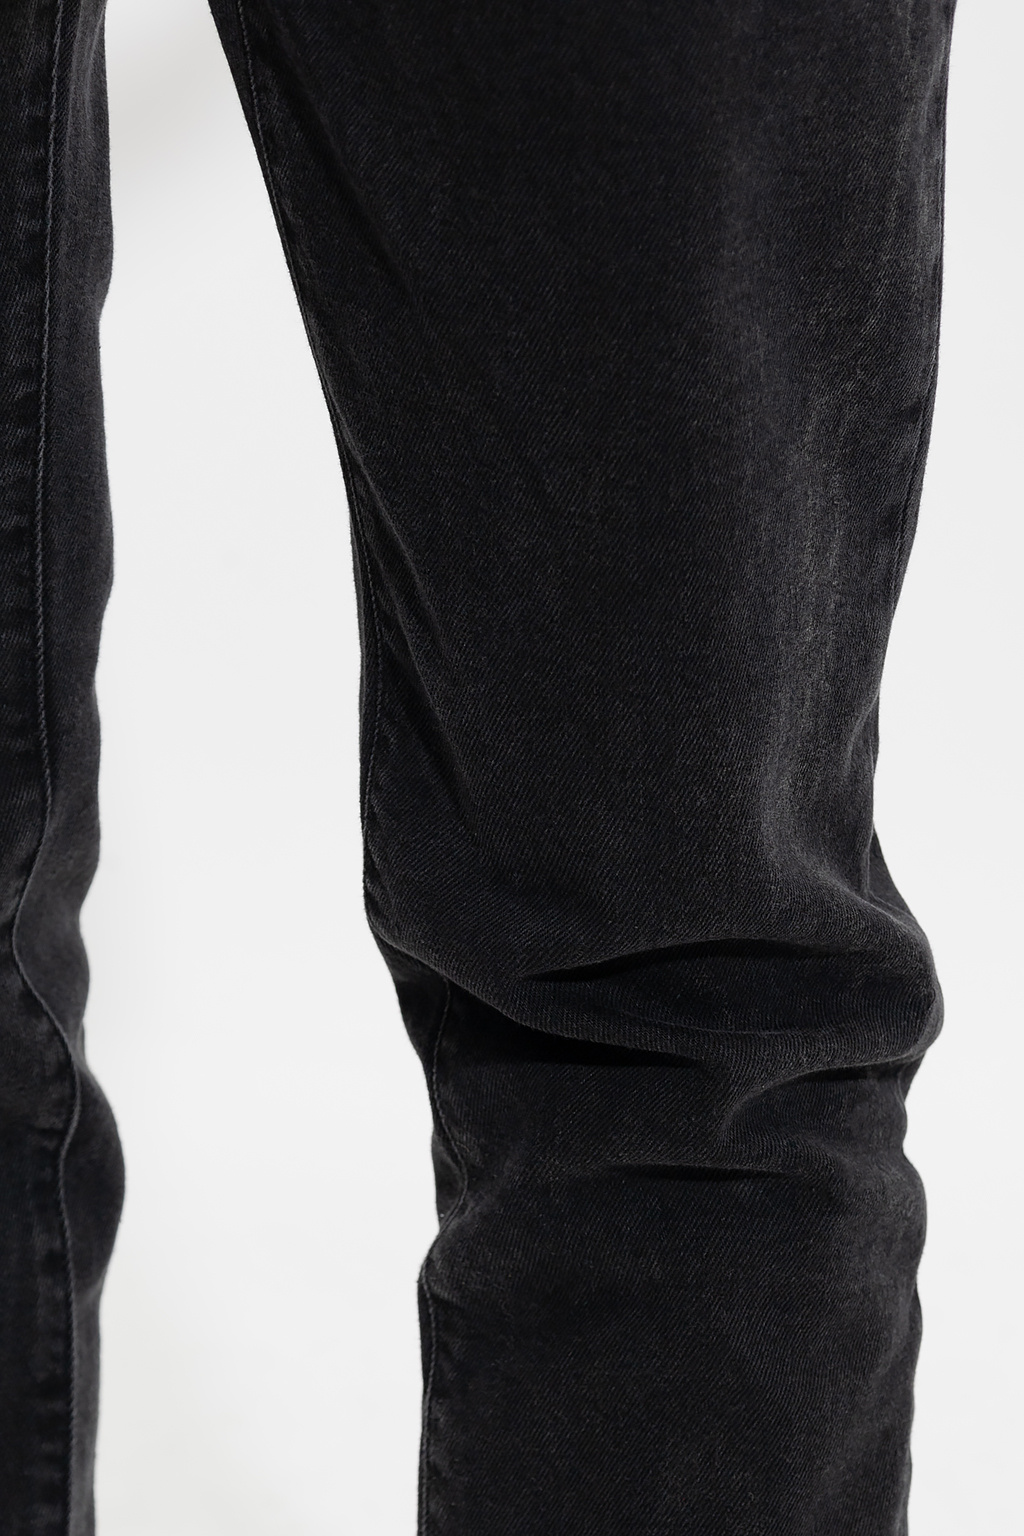 Louis Vuitton Black Faded Effect Denim Slim Fit Jeans XL Louis Vuitton |  The Luxury Closet